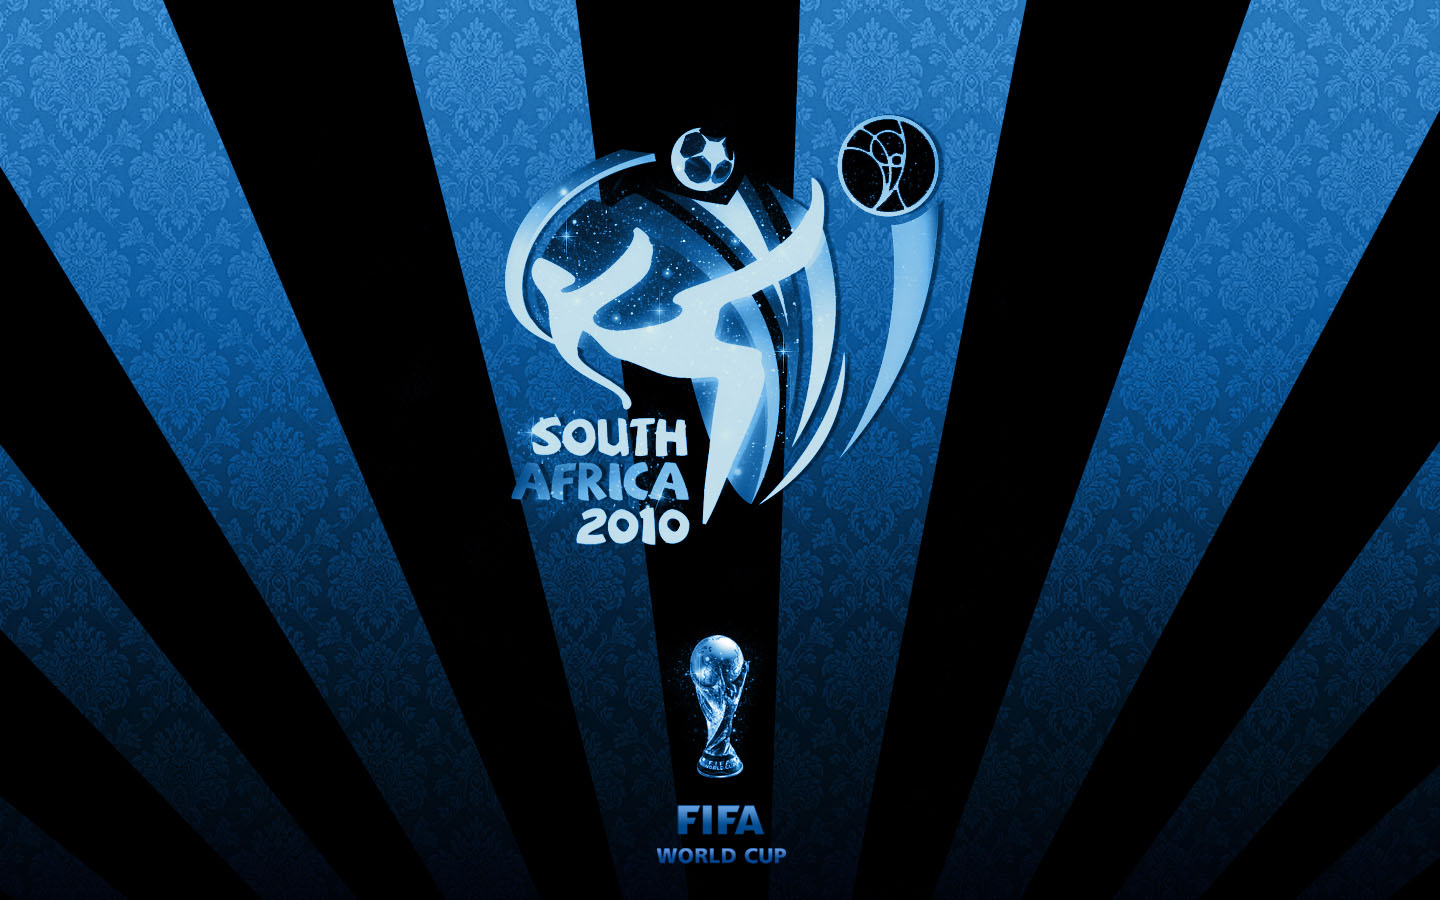 南非世界杯特辑 壁纸(五)8 - 1366x768 壁纸下载 - 南非世界杯特辑 壁纸(五) - 体育壁纸 - V3壁纸站